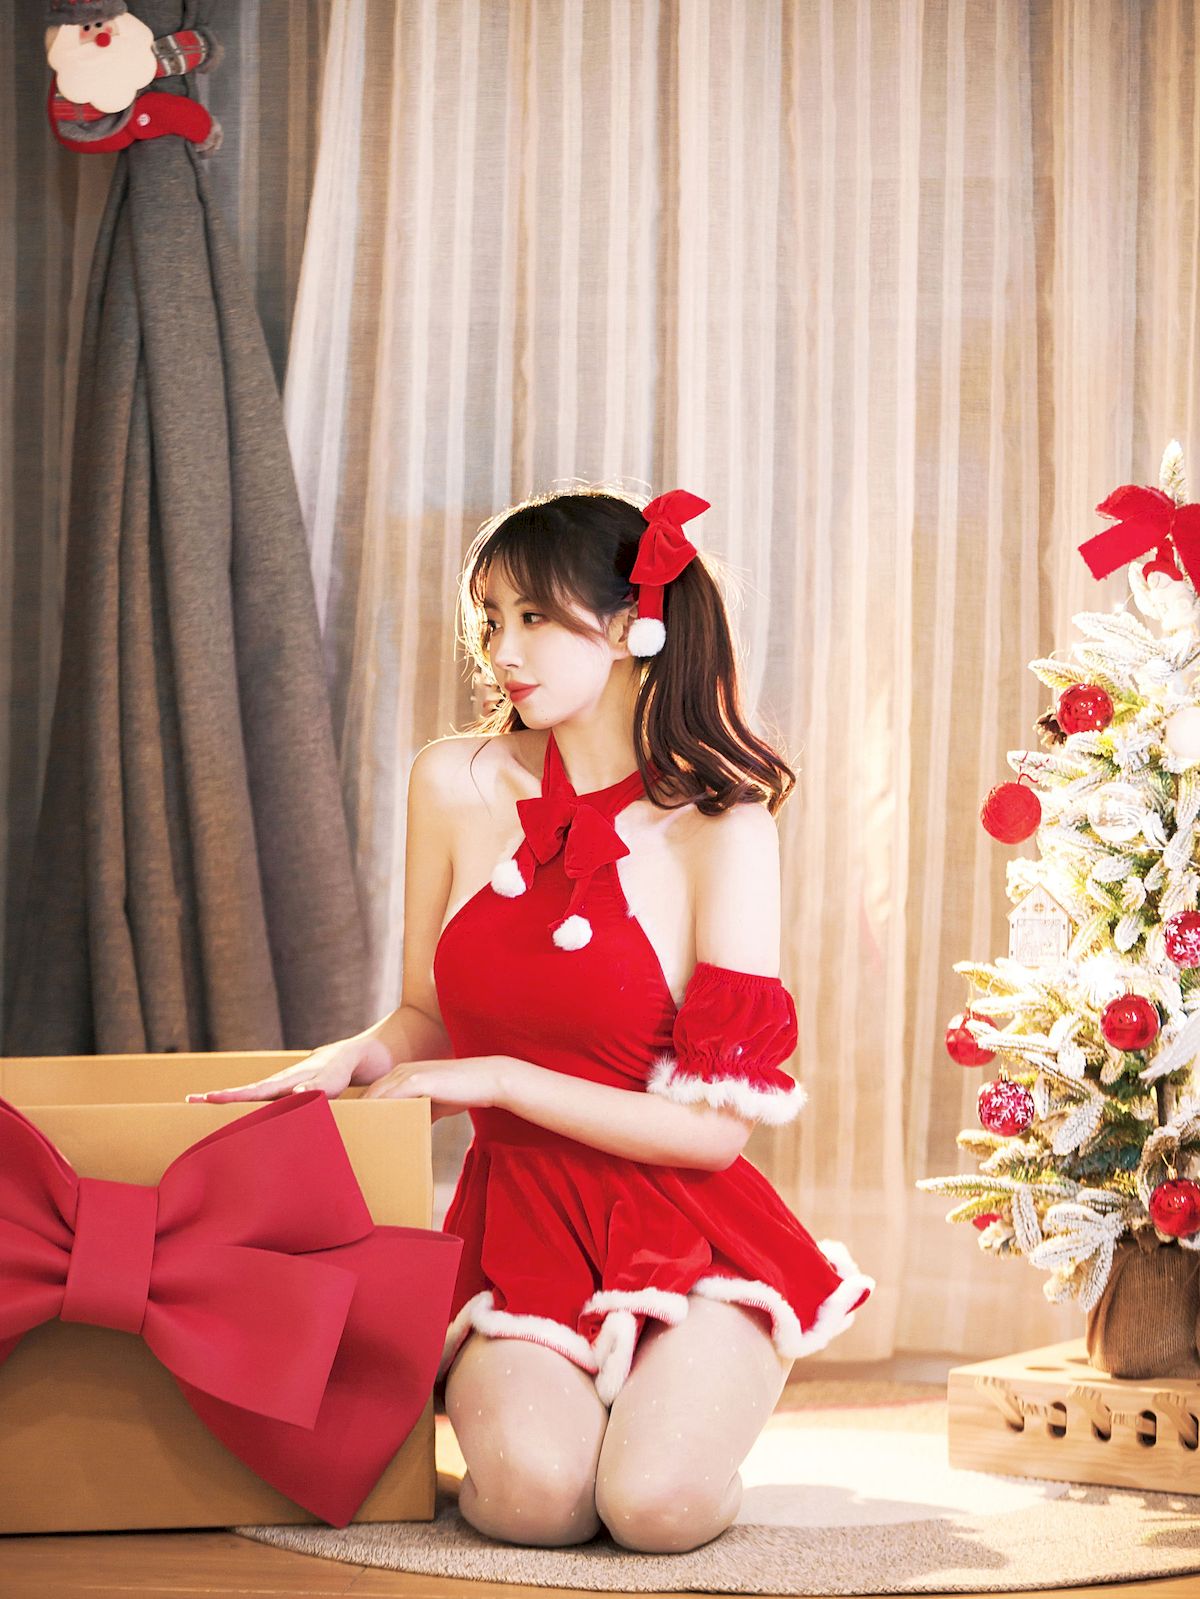 念雪ww圣诞红裙玫瑰礼物主题可爱写真